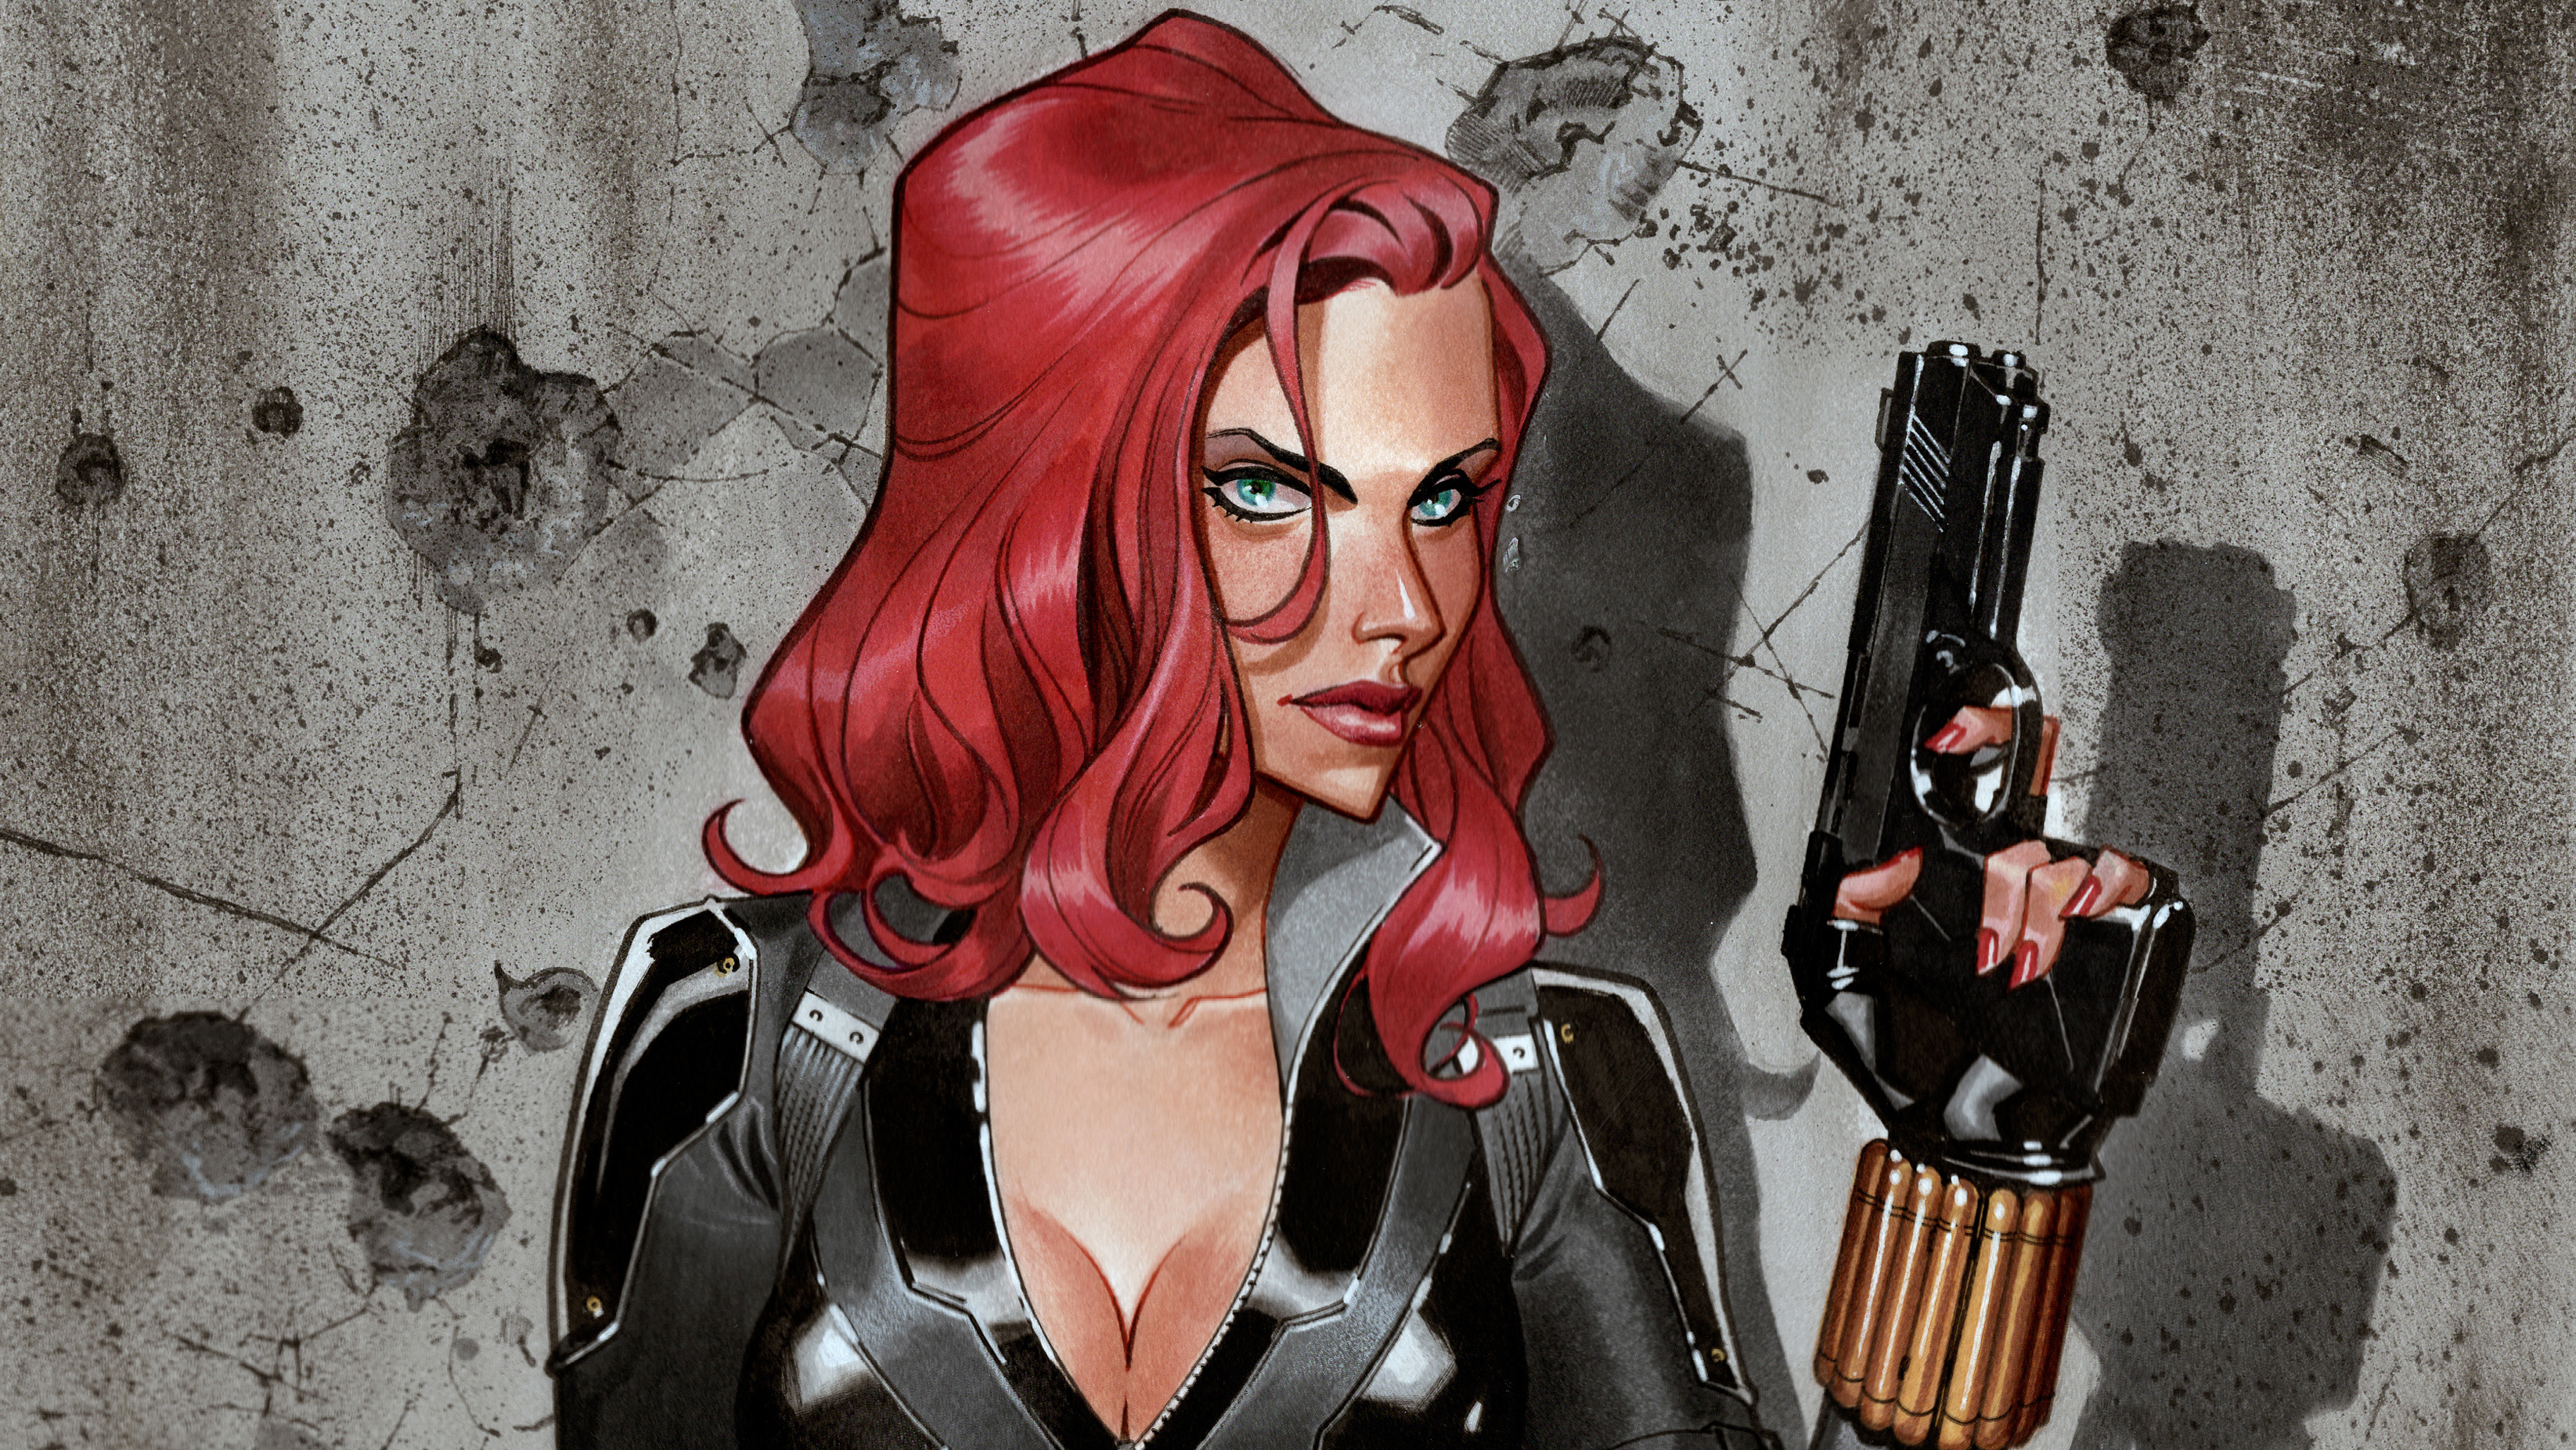 Avengers Black Widow Gun Marvel Comics Red Hair Woman Warrior 3291x1852